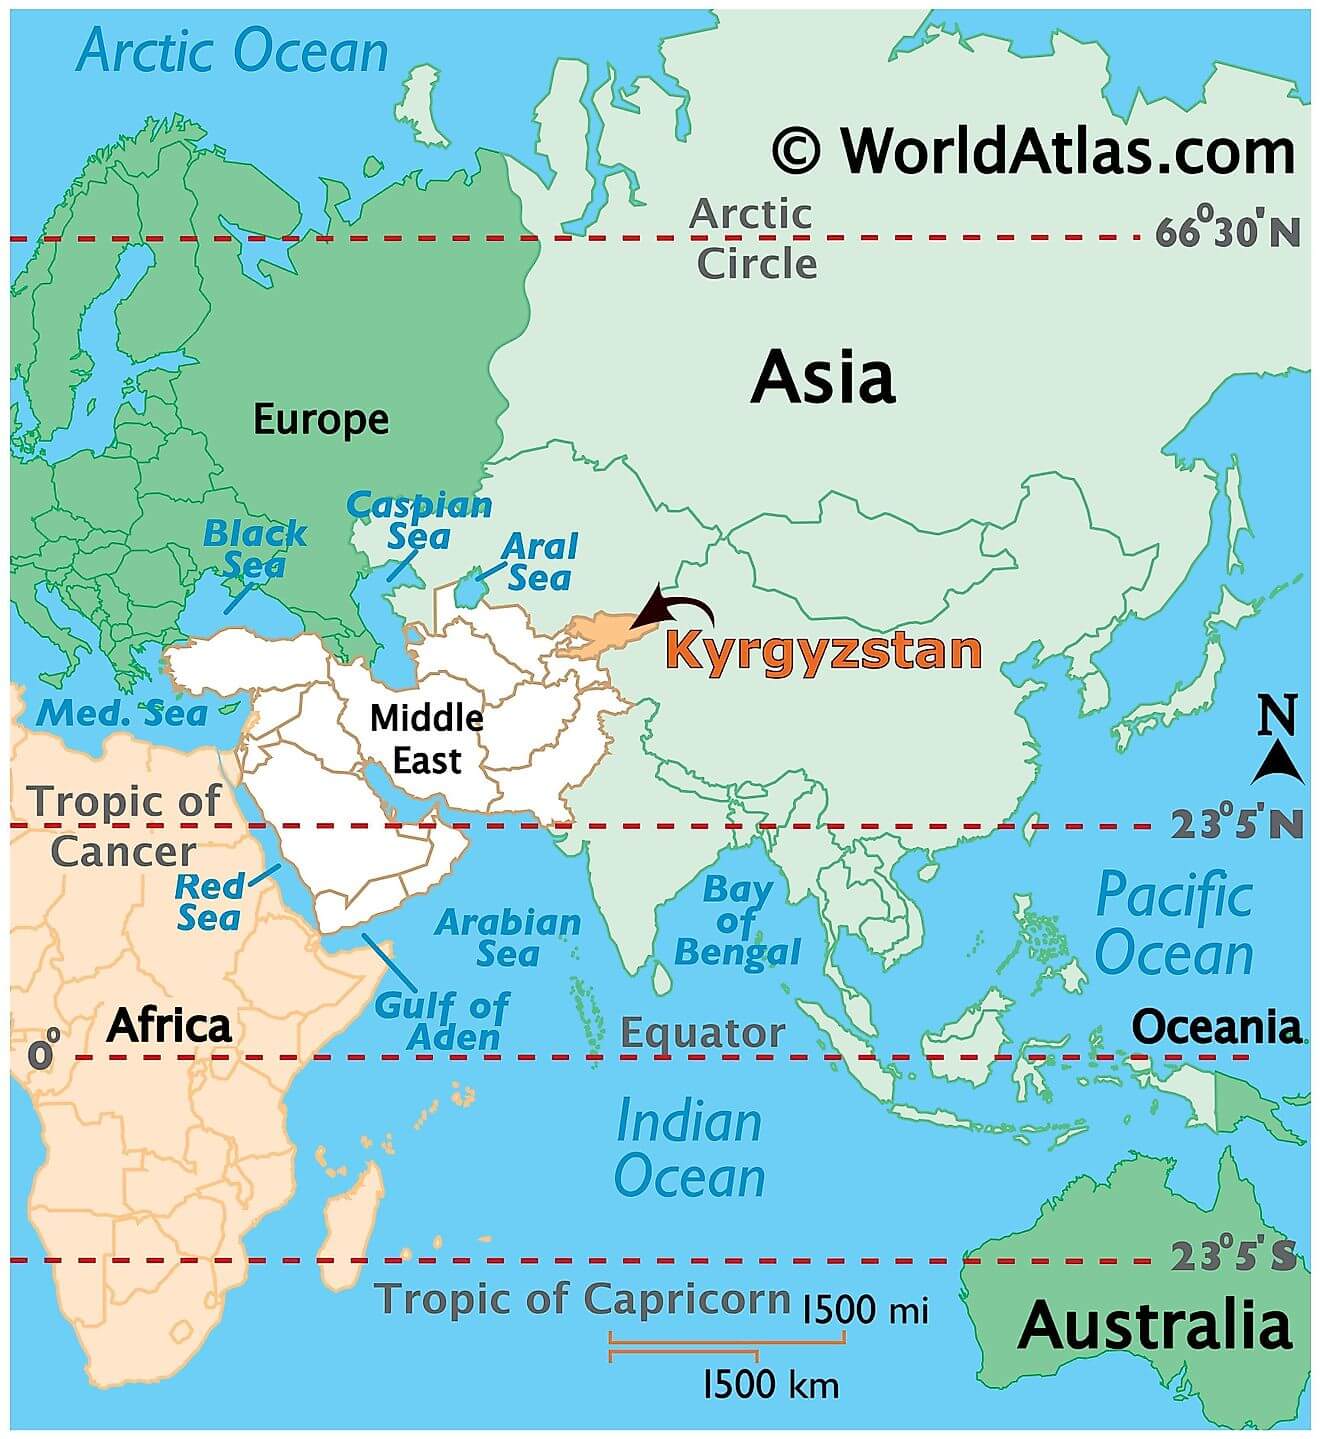 Kyrgyzstan ở đâu?